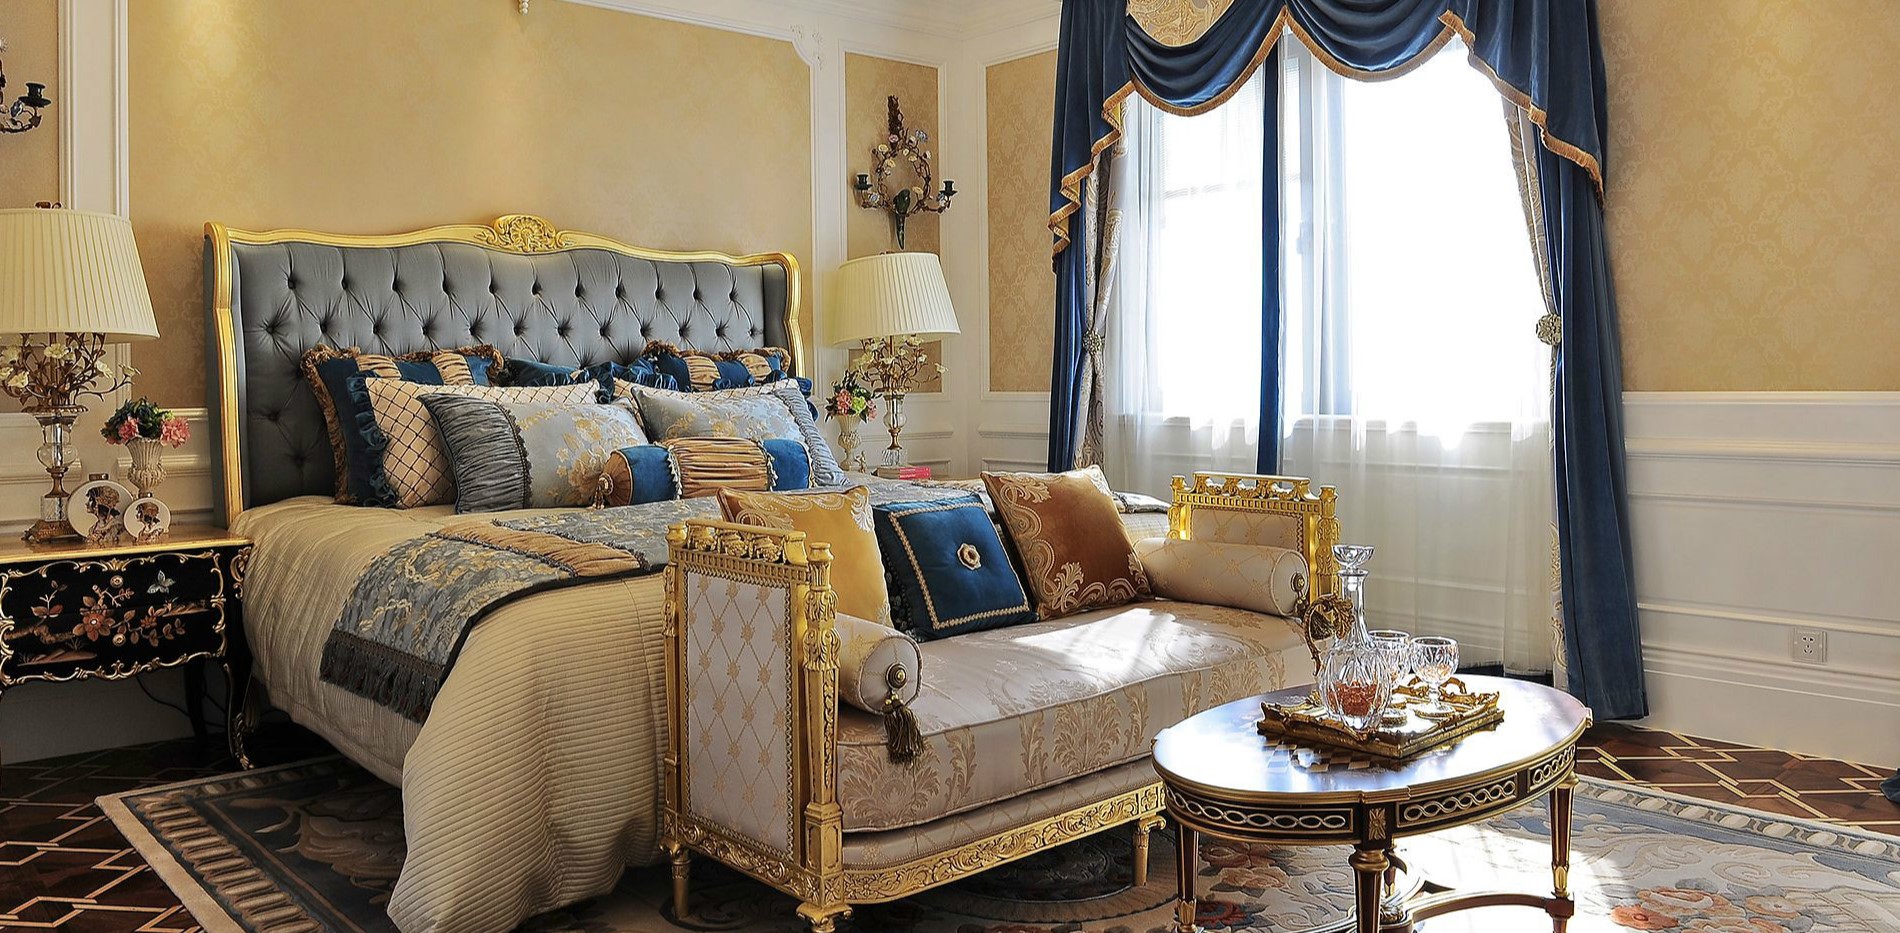 Роскошное постельное белье и шторы отлично сочетаются с мебелью дворцовом стиле